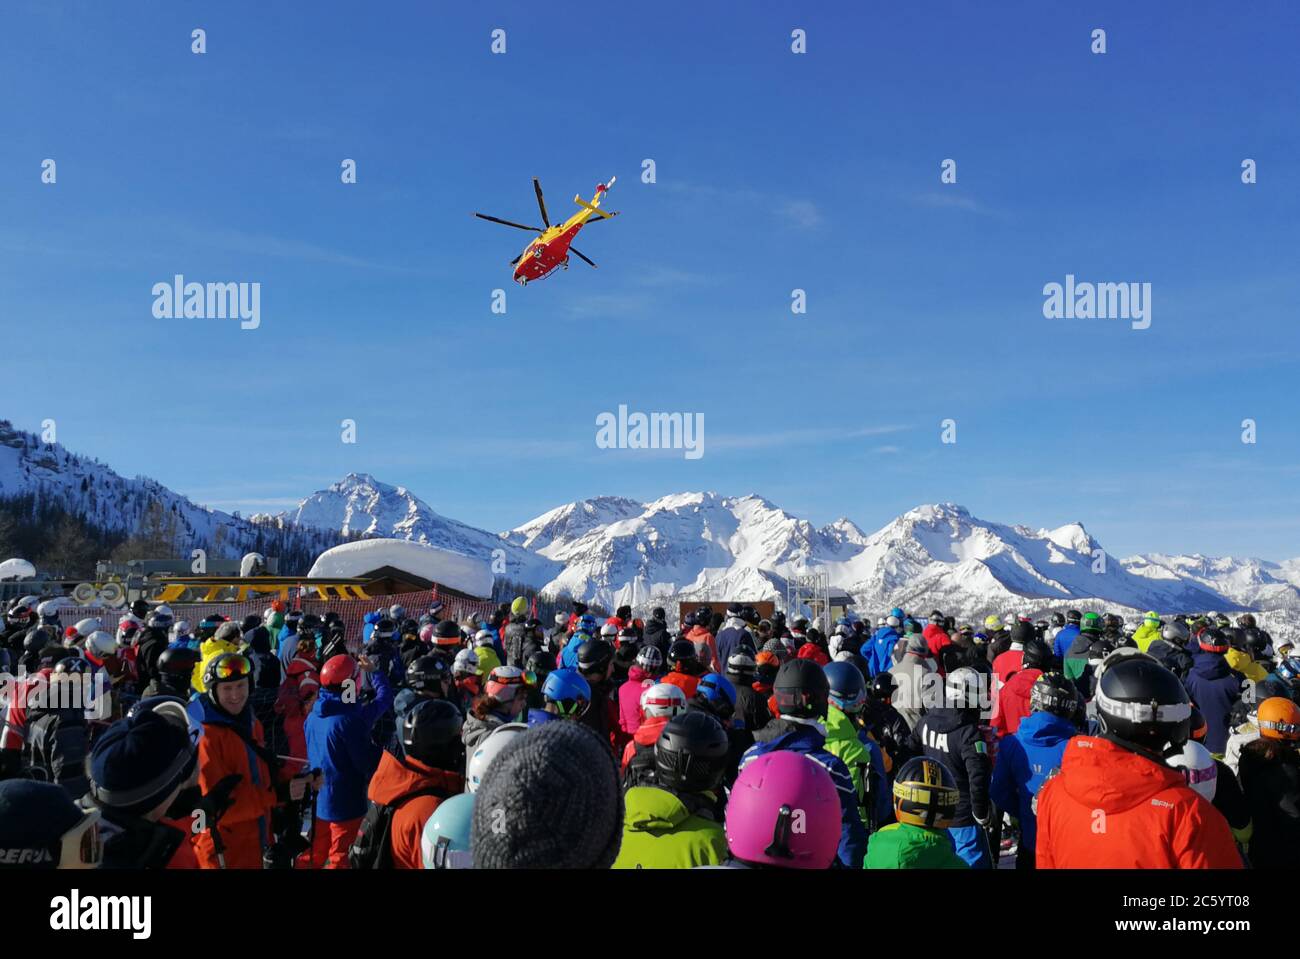 En las pistas de esquí, el rescate en helicóptero es esencial para los accidentes urgentes. Foto de stock